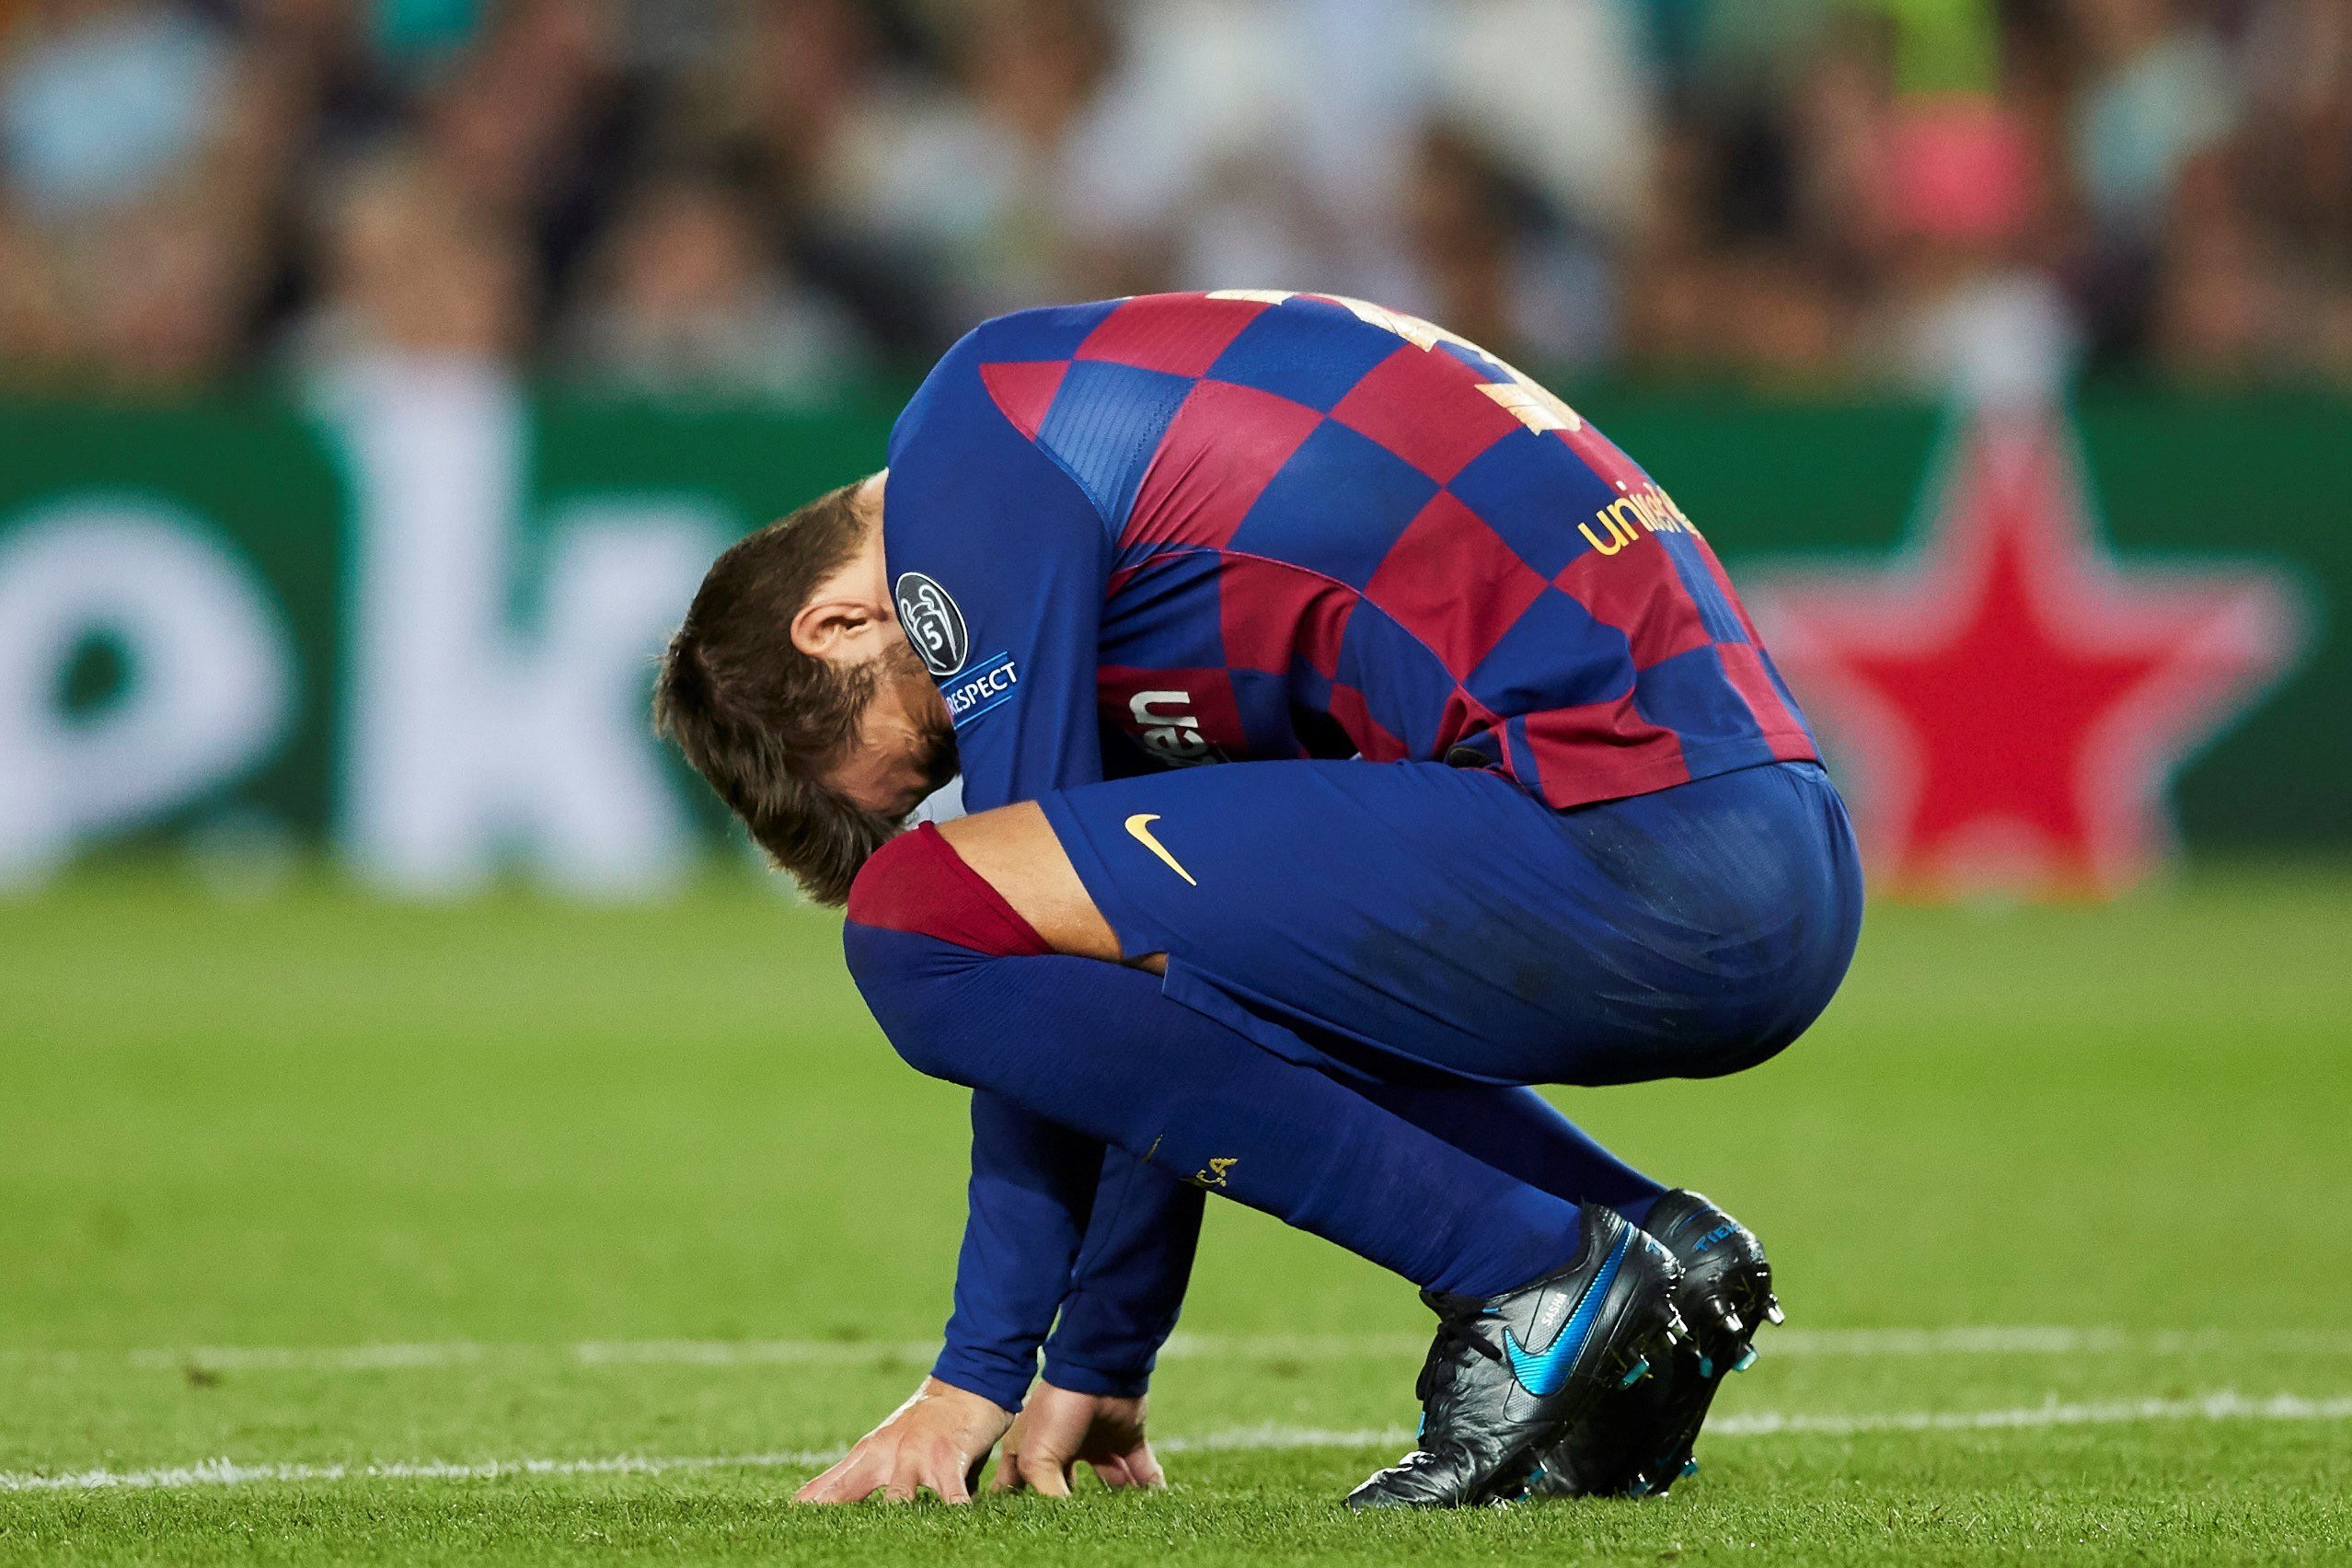 La dada que demostra que el Barça pateix un dels pitjors moments de la dècada